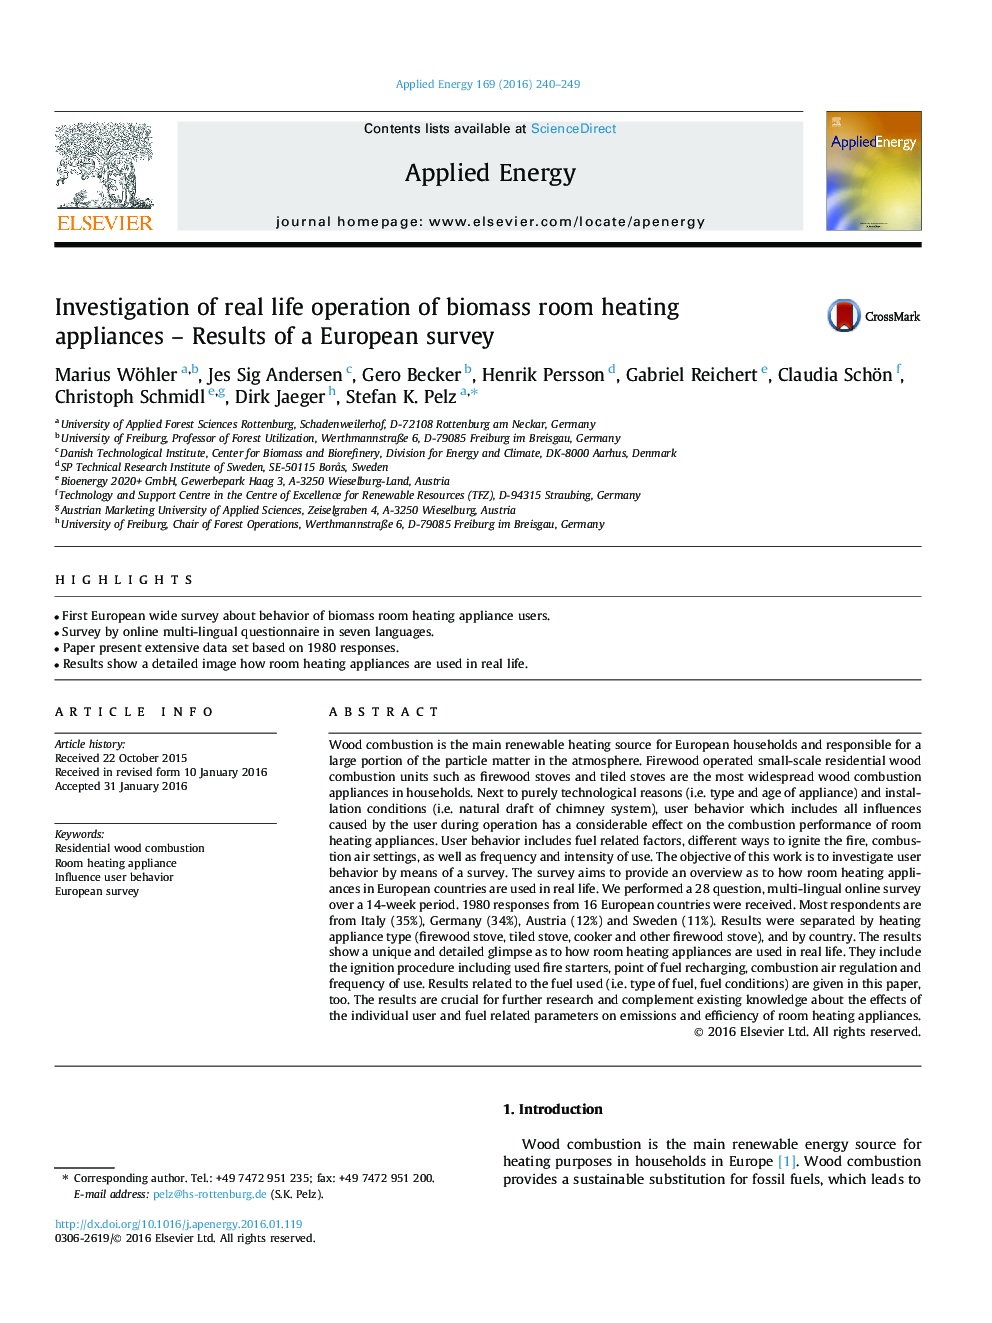 بررسی عملیات زندگی واقعی وسایل گرمایش اتاق زغال سنگ - نتایج یک نظرسنجی اروپایی 